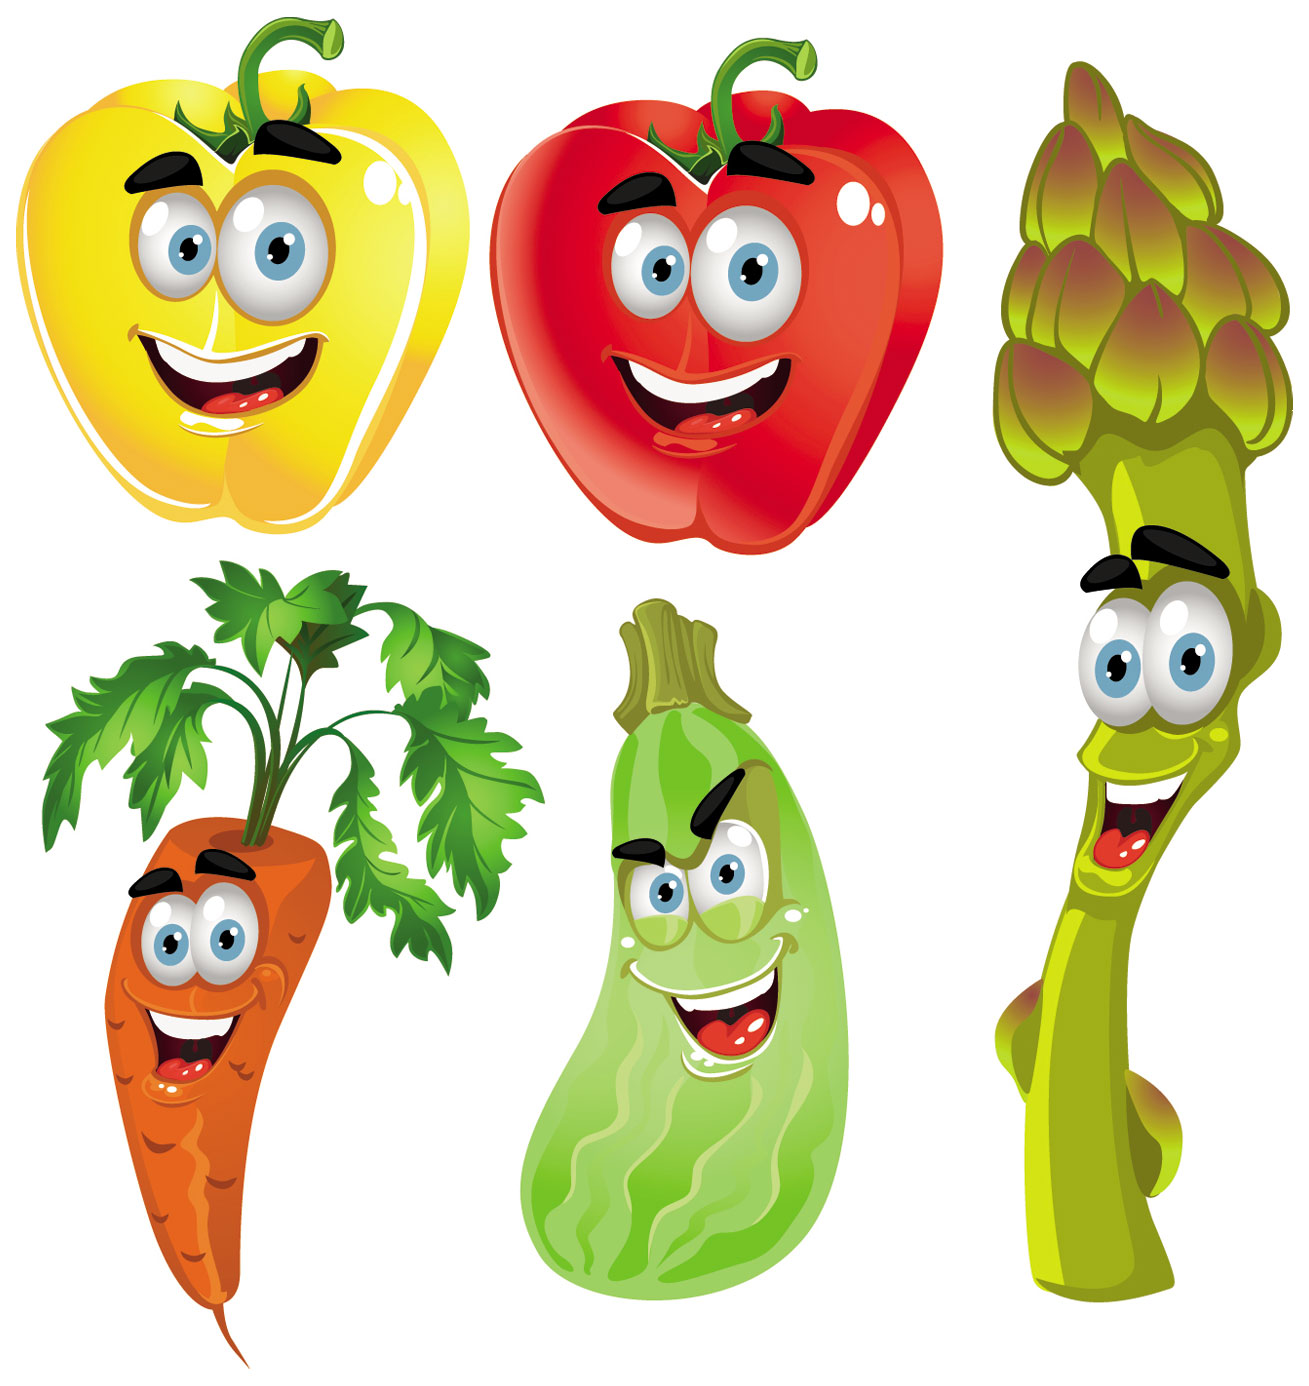 Vegetable cartoon image vector-4 | Download Free Vectors